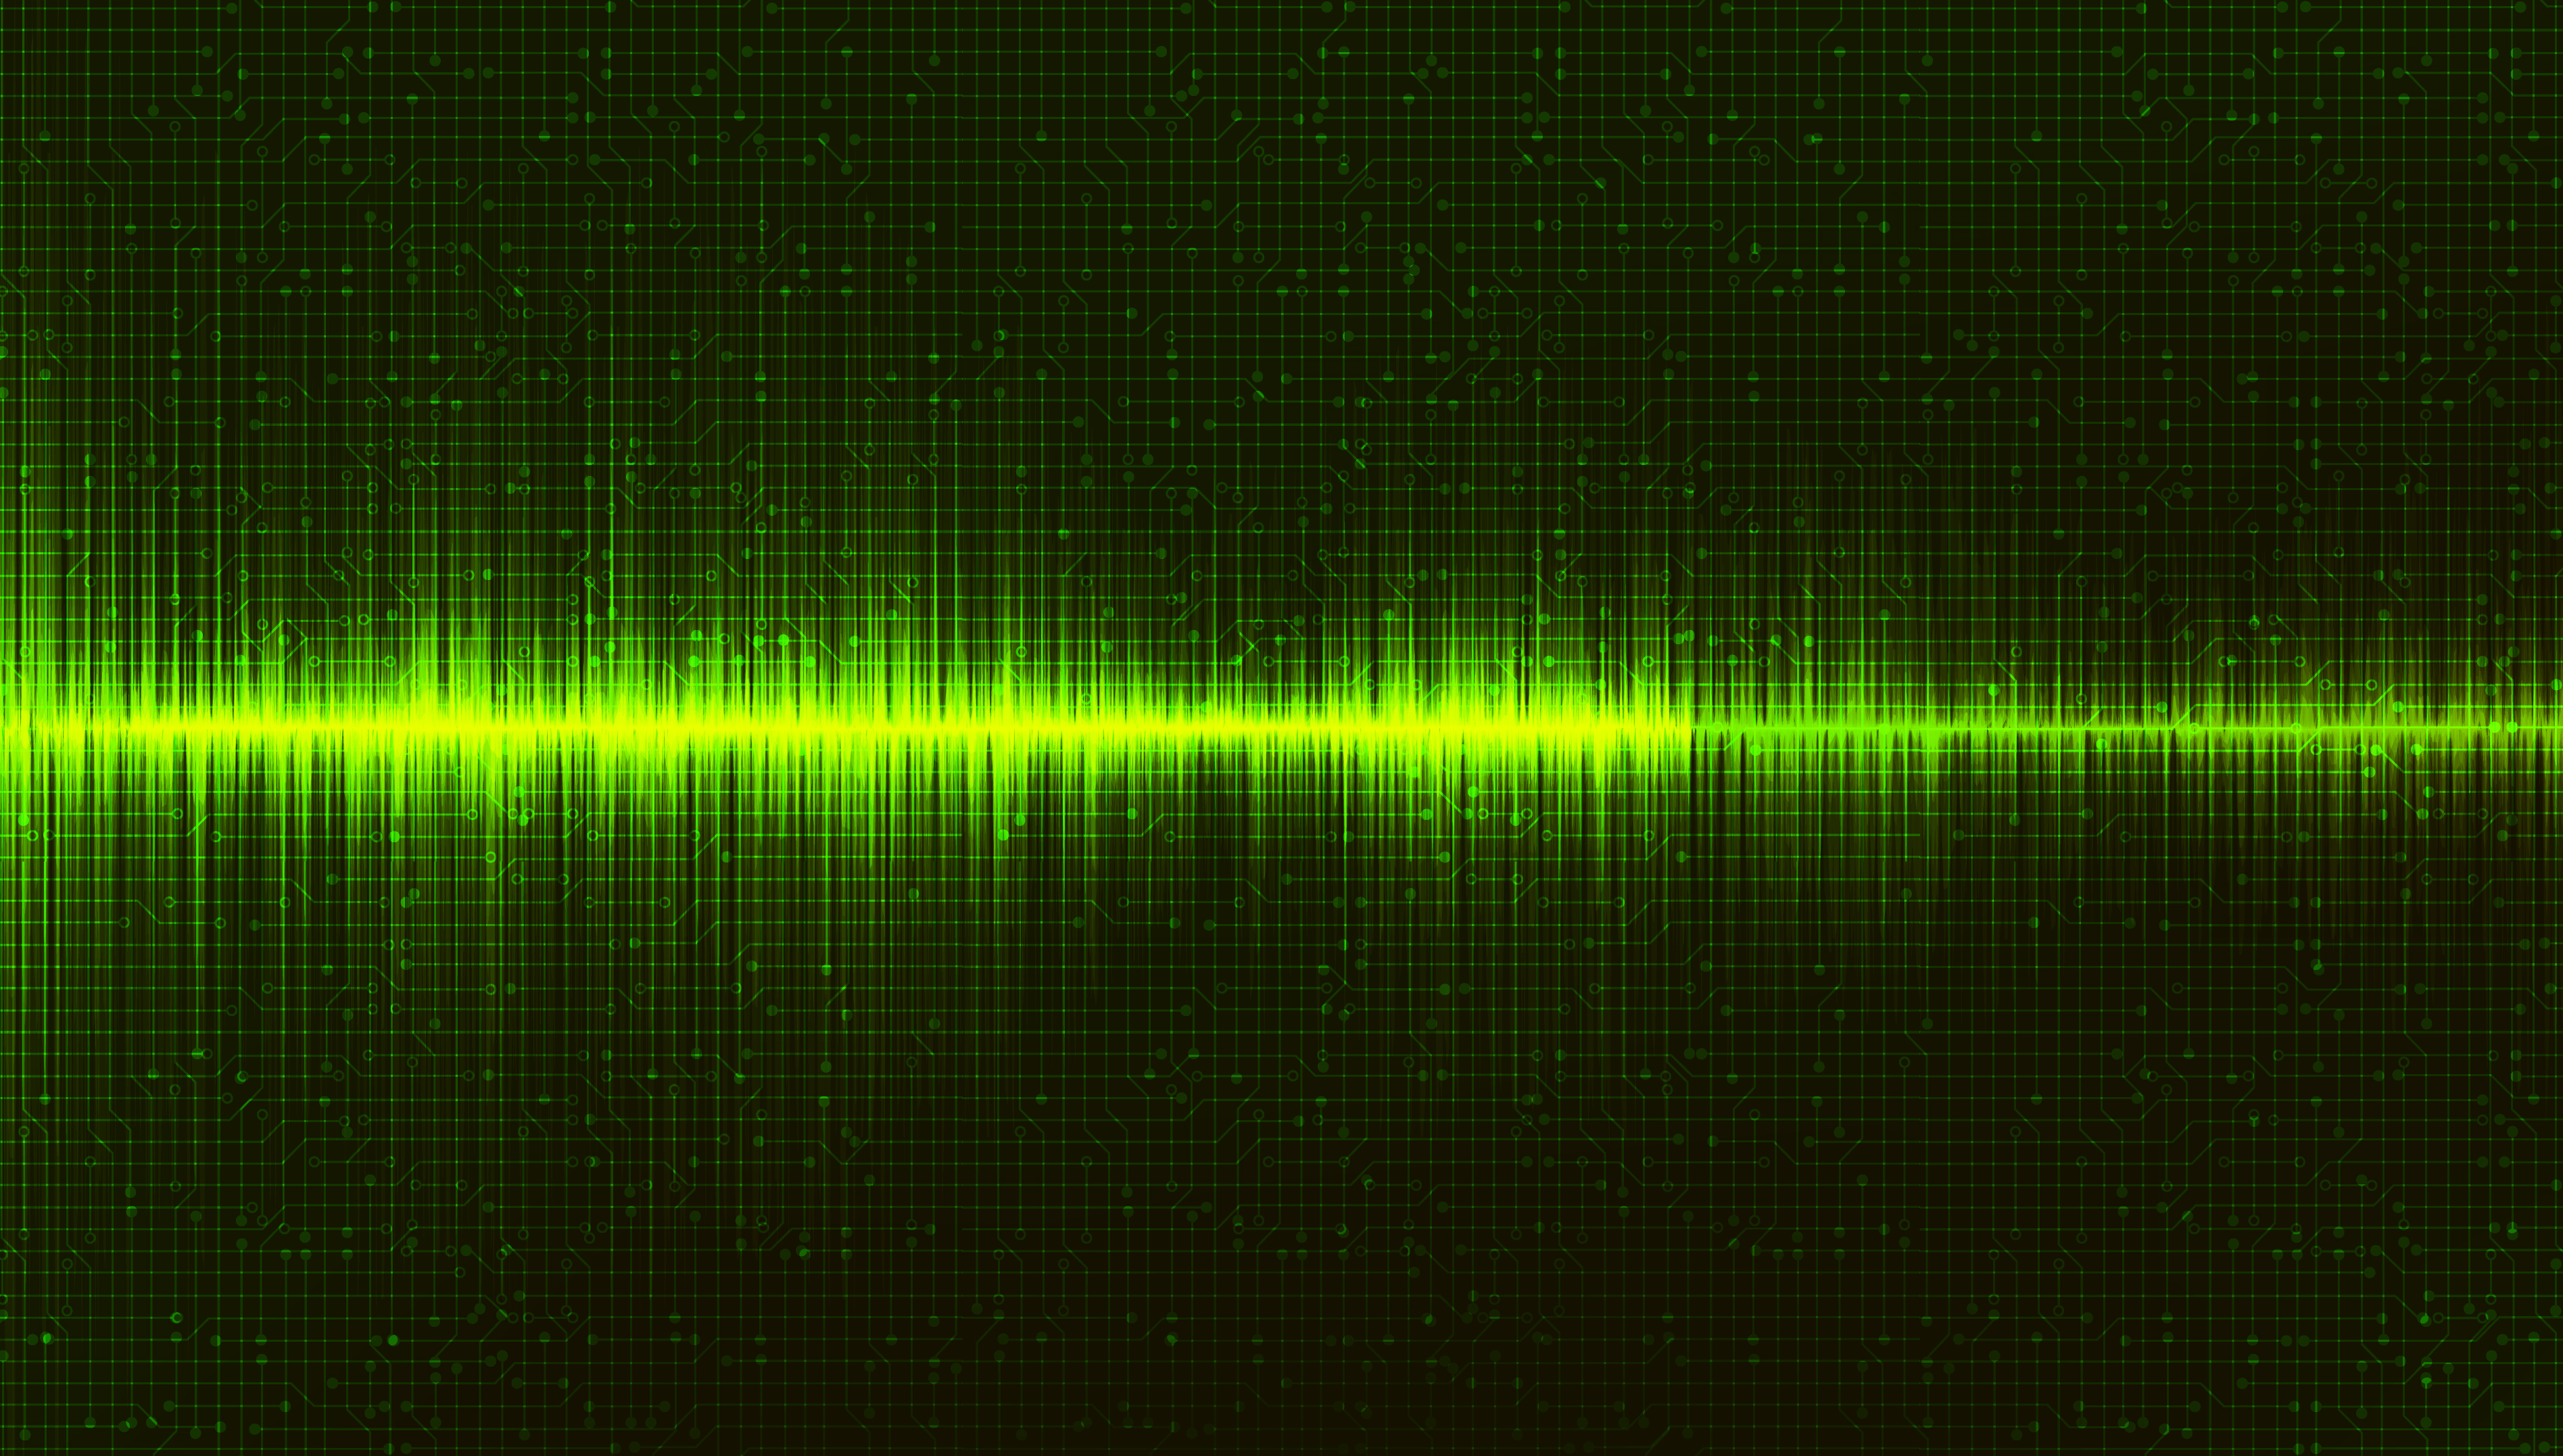 Bạn muốn tìm kiếm một nền kỹ thuật số sóng âm màu xanh lá cây để tạo ấn tượng cho website của bạn? Hãy tham khảo các hình ảnh của Clone.vn để tìm kiếm những mẫu đẹp, độc đáo và phù hợp với phong cách của bạn. Nổi bật website của bạn bằng nền kỹ thuật số sóng âm này ngay hôm nay.